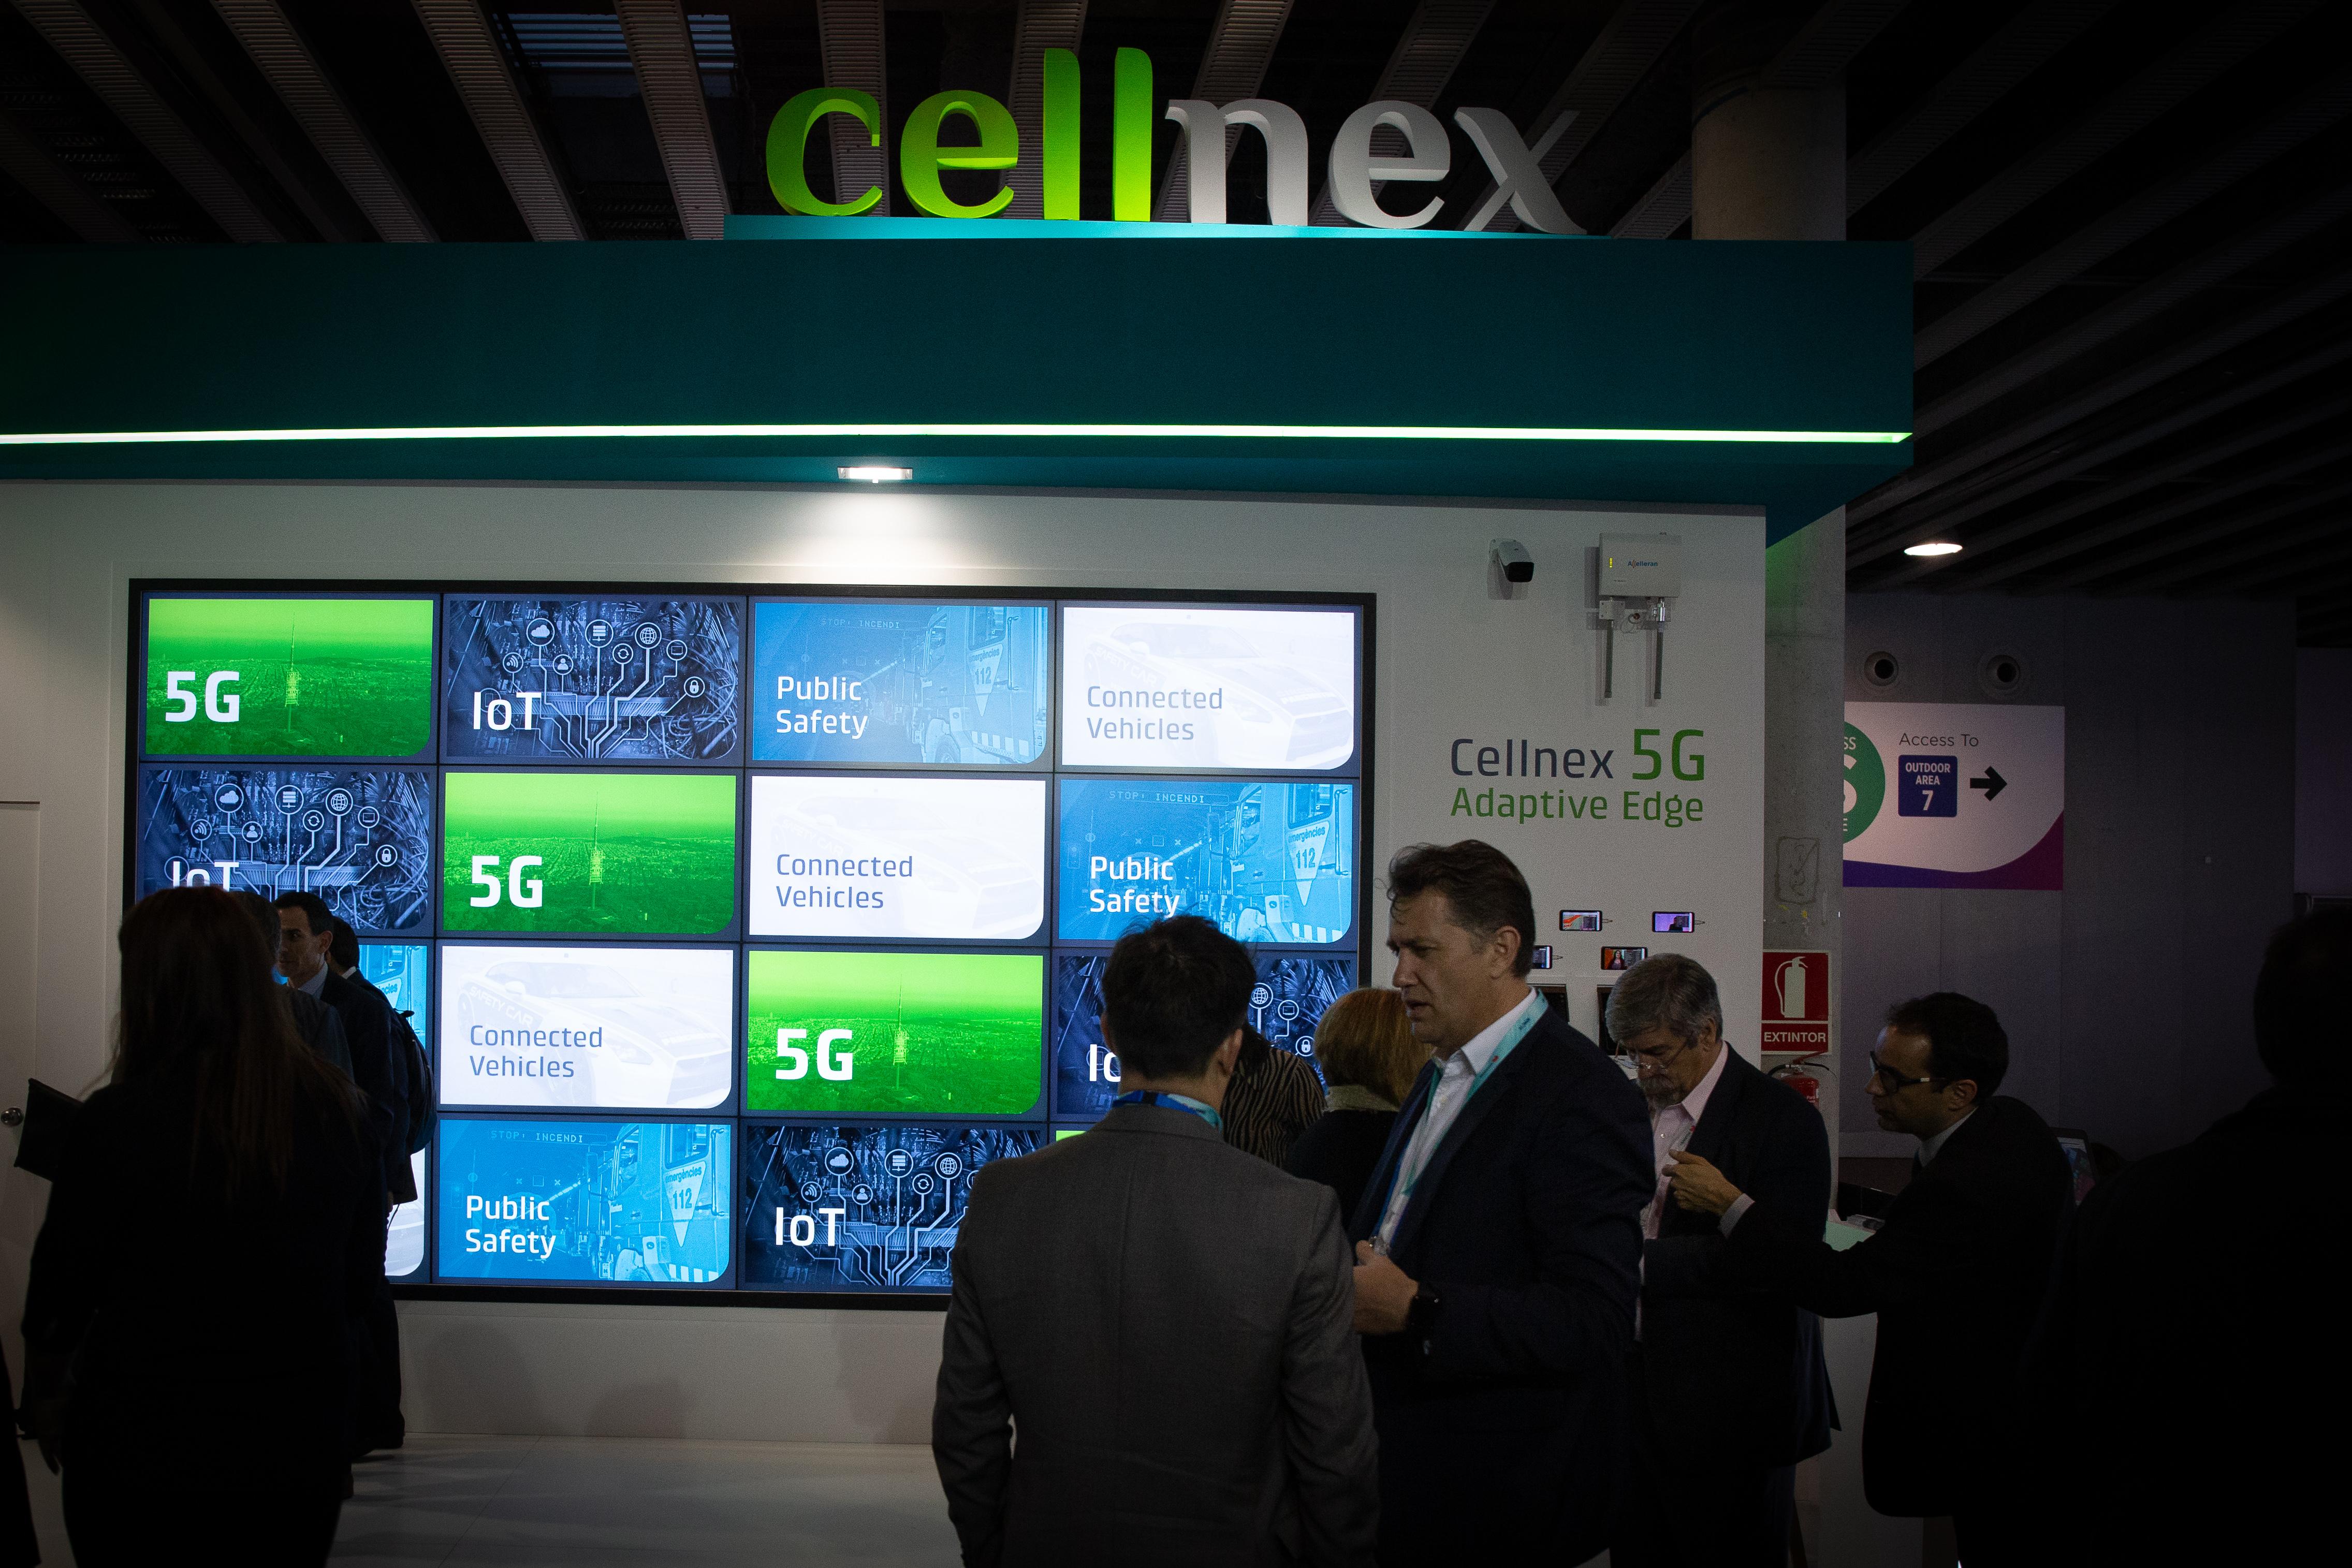 Estand de 'cellnex' promocionanado la tecnología 5G en el recinto ferial del Mobile World Congress de Barcelona   MWC 2019 - David Zorrakino Europa Press